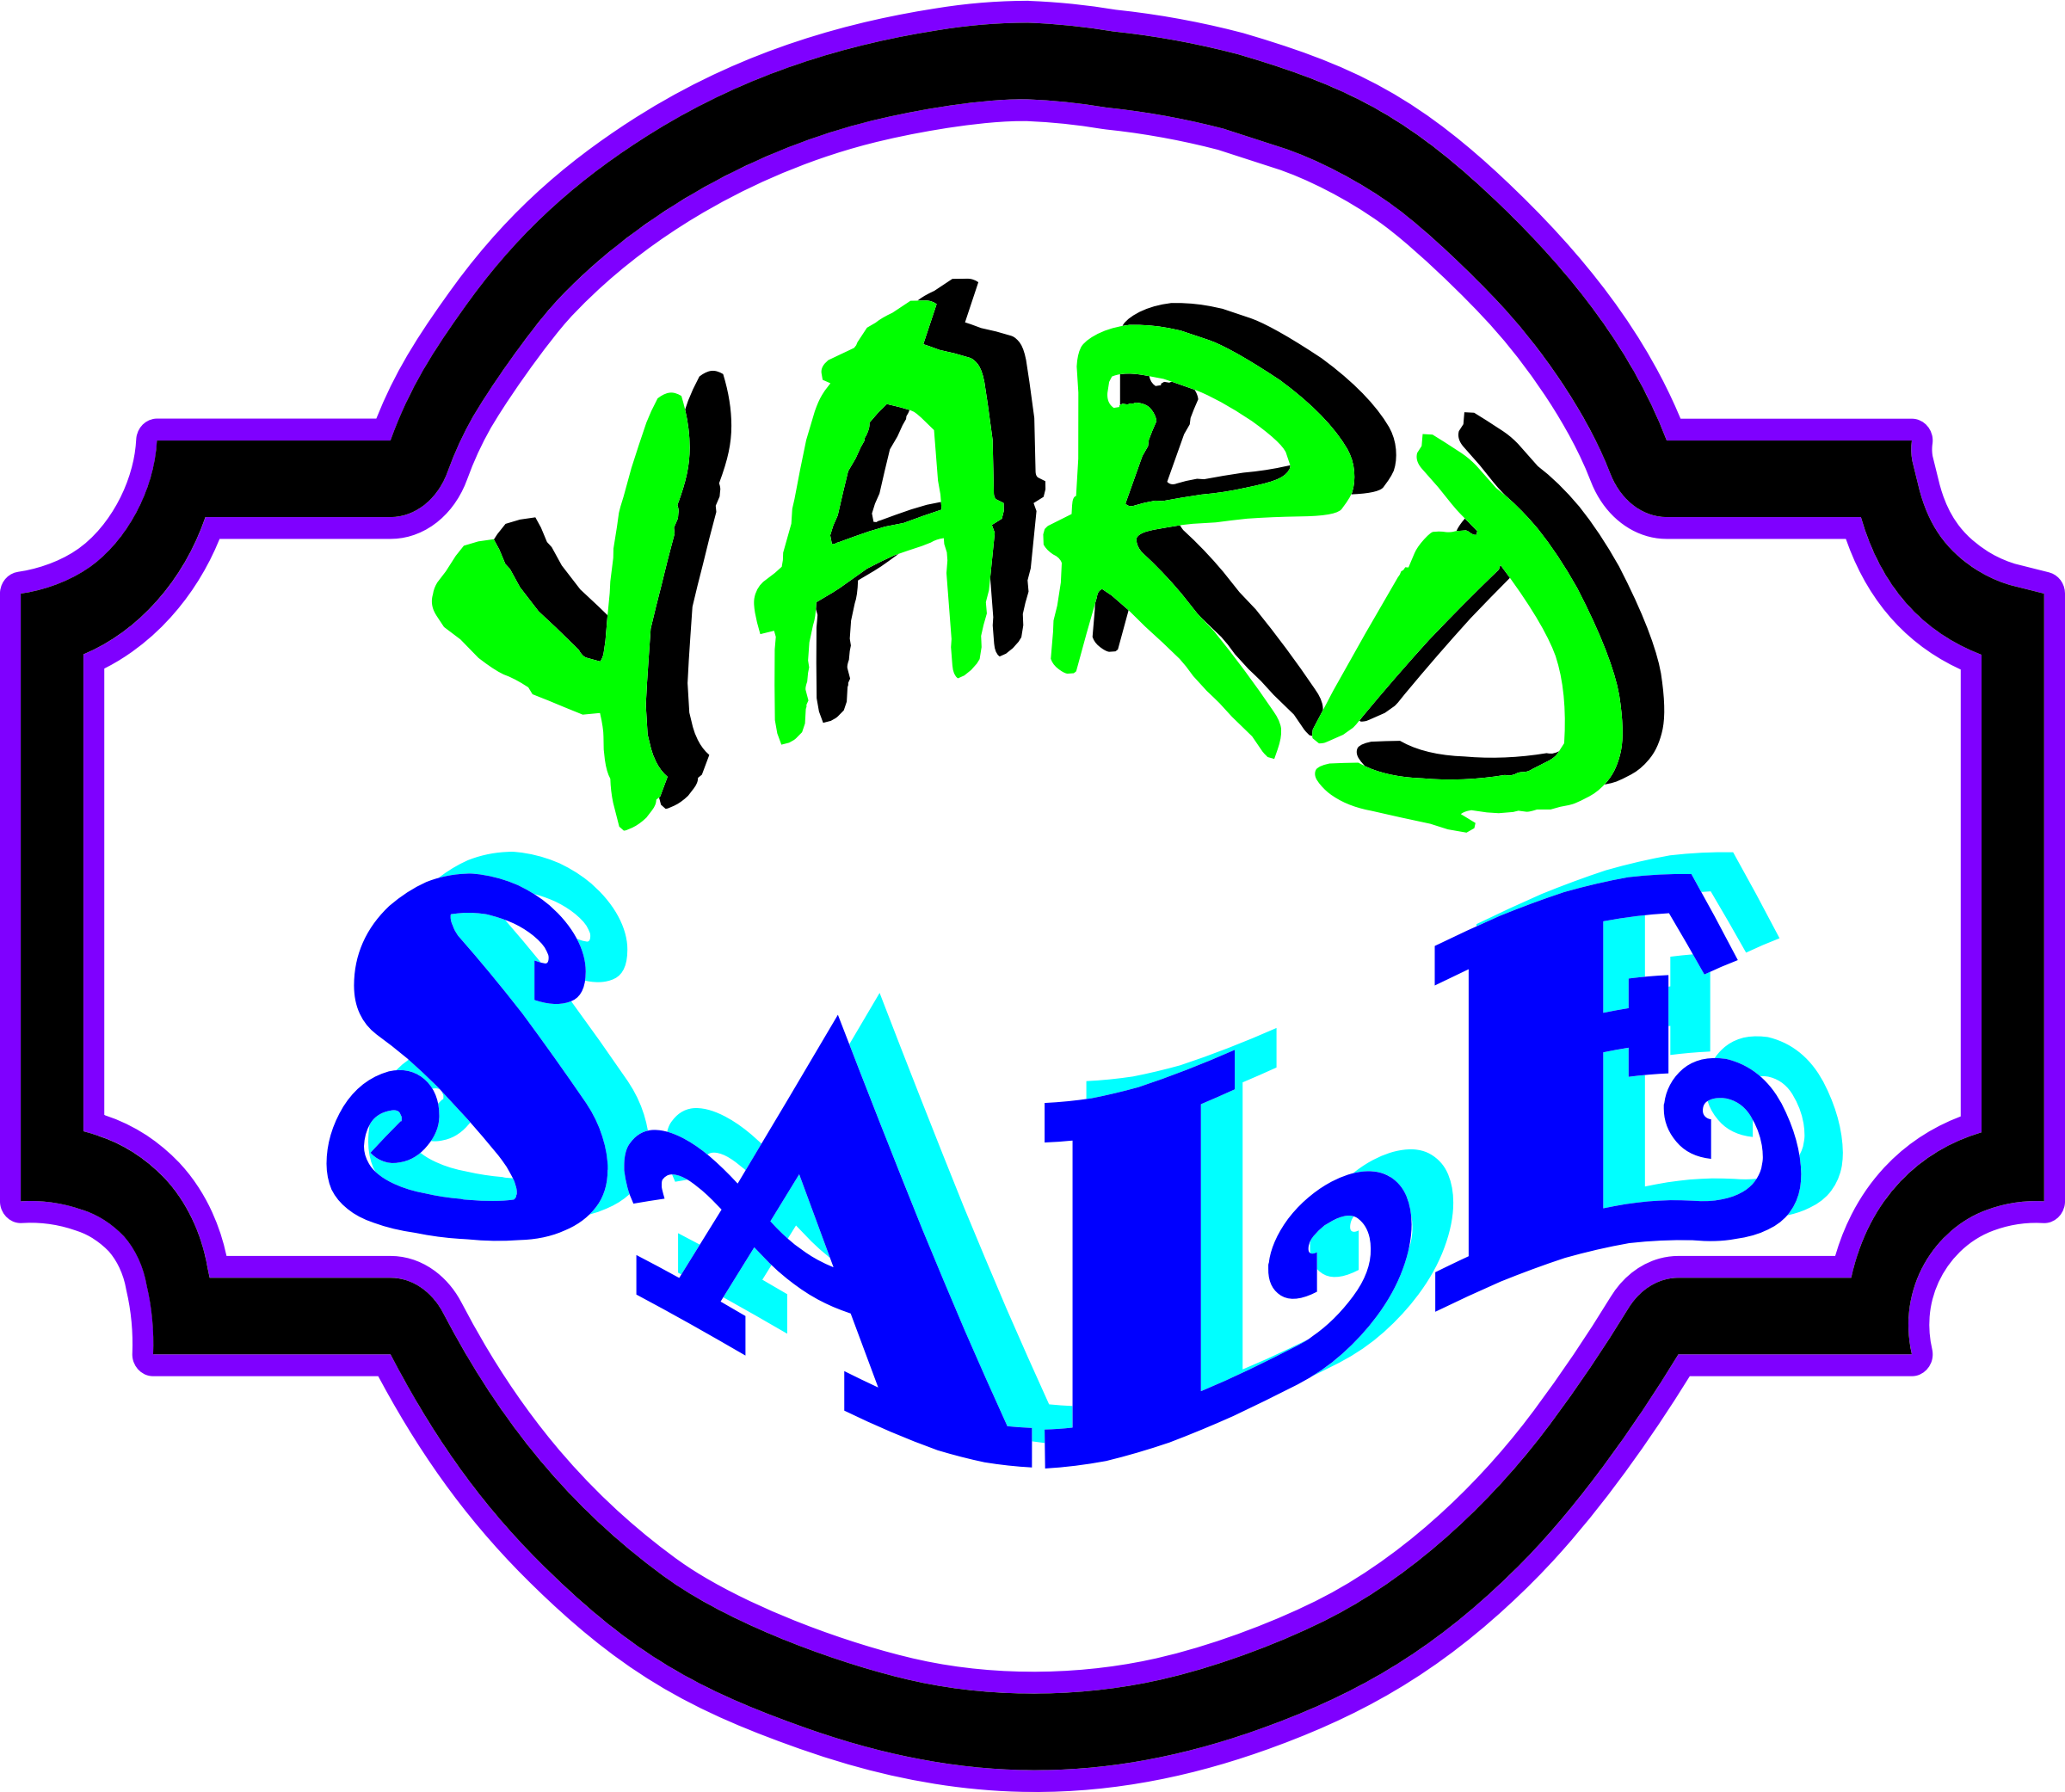 Free Printable Yard Sale Signs Online